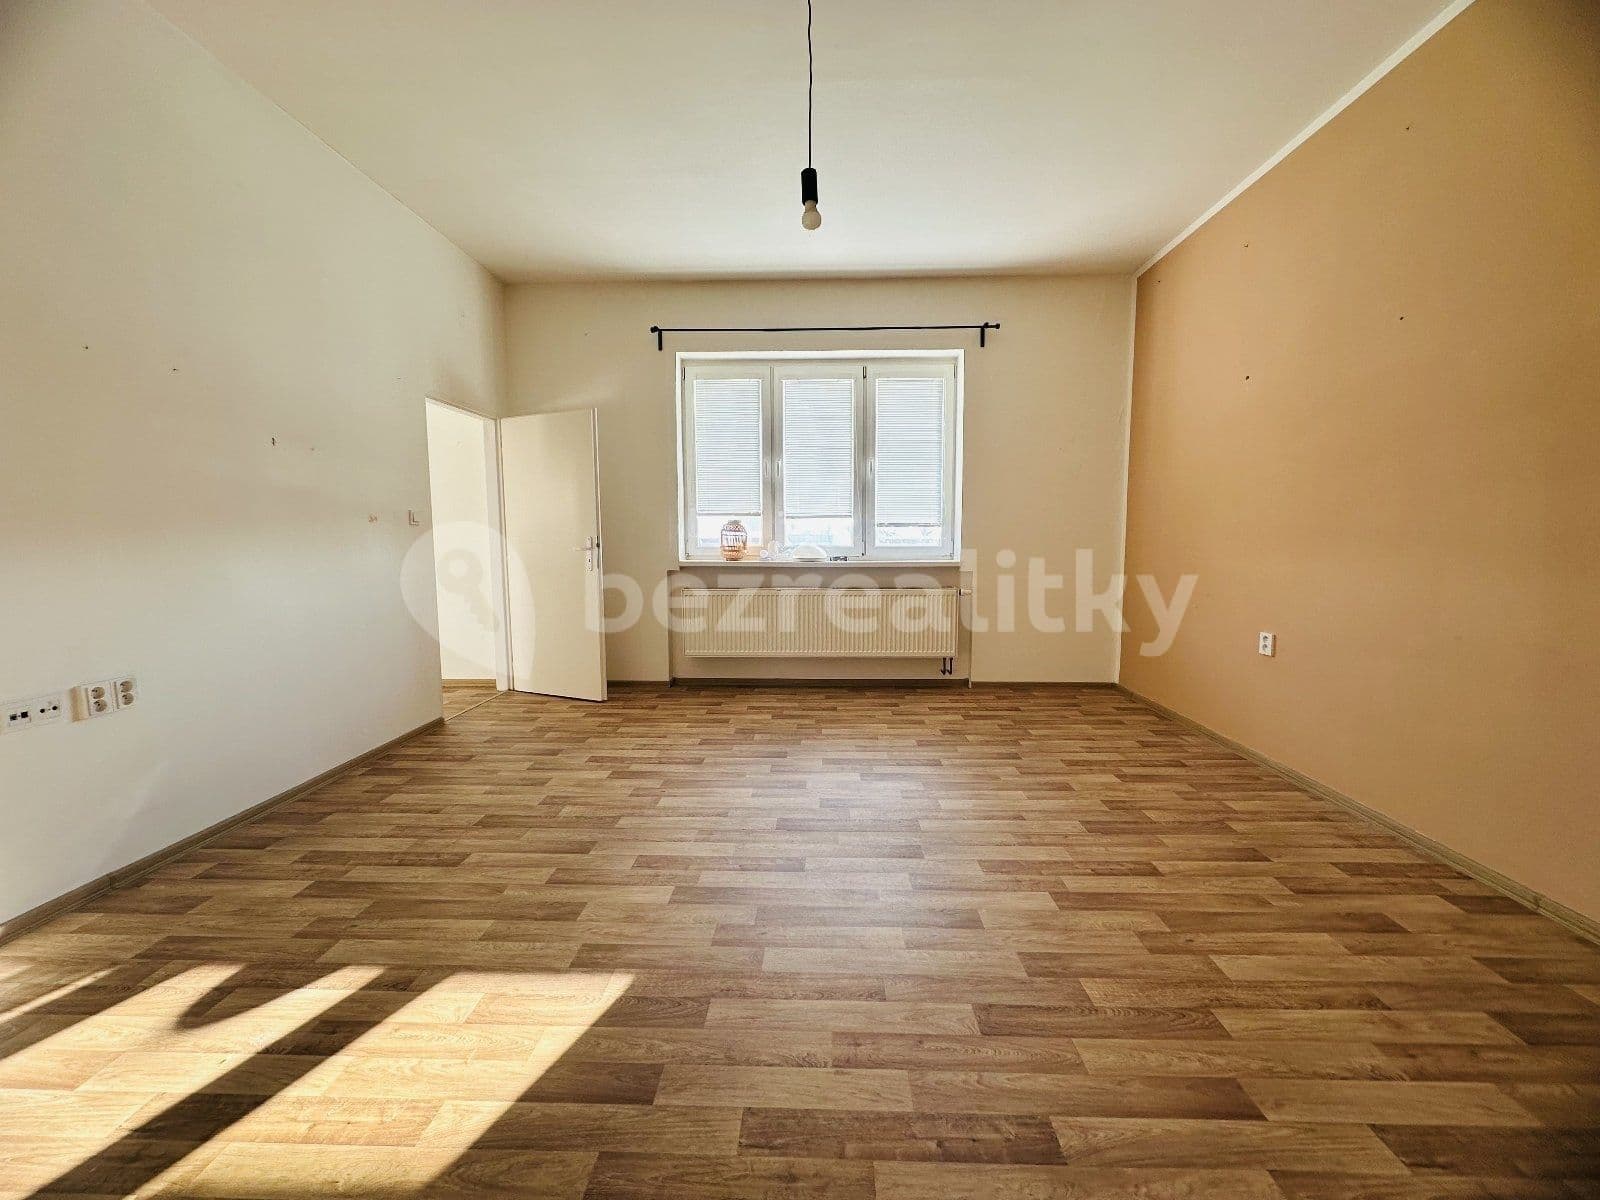 1 bedroom flat to rent, 42 m², Myslbekova, Ostrava, Moravskoslezský Region